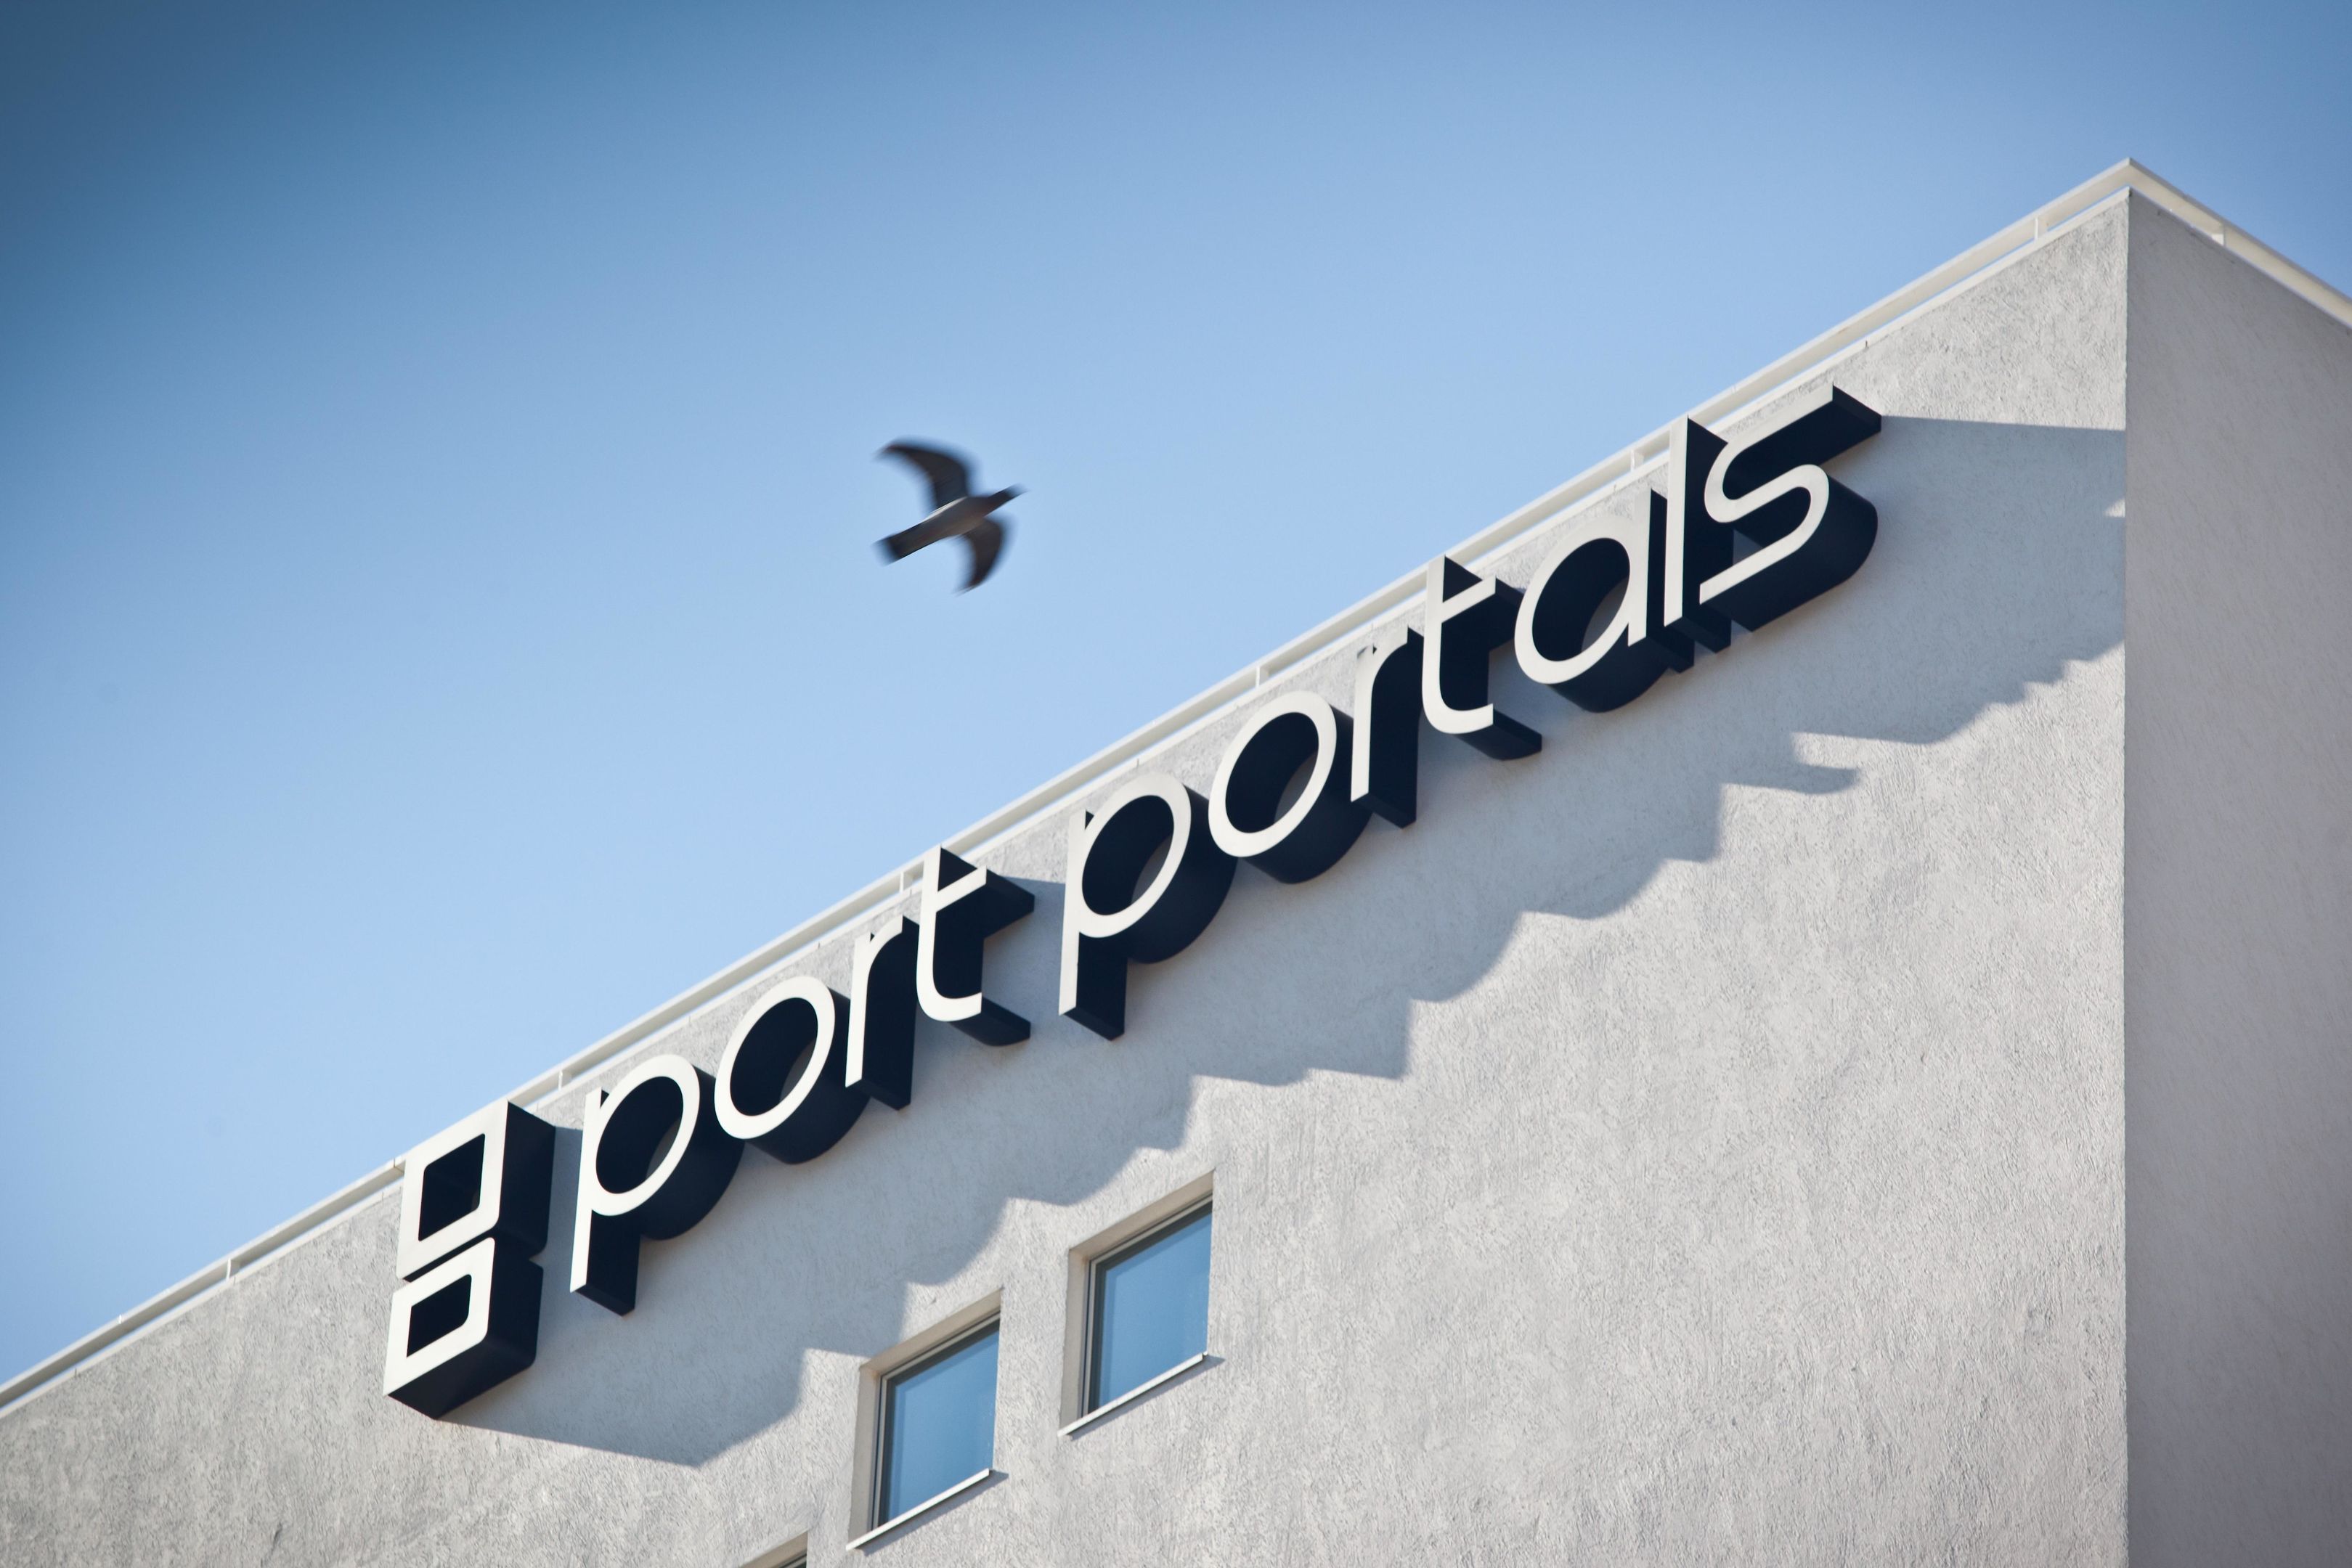 Od Port Portals